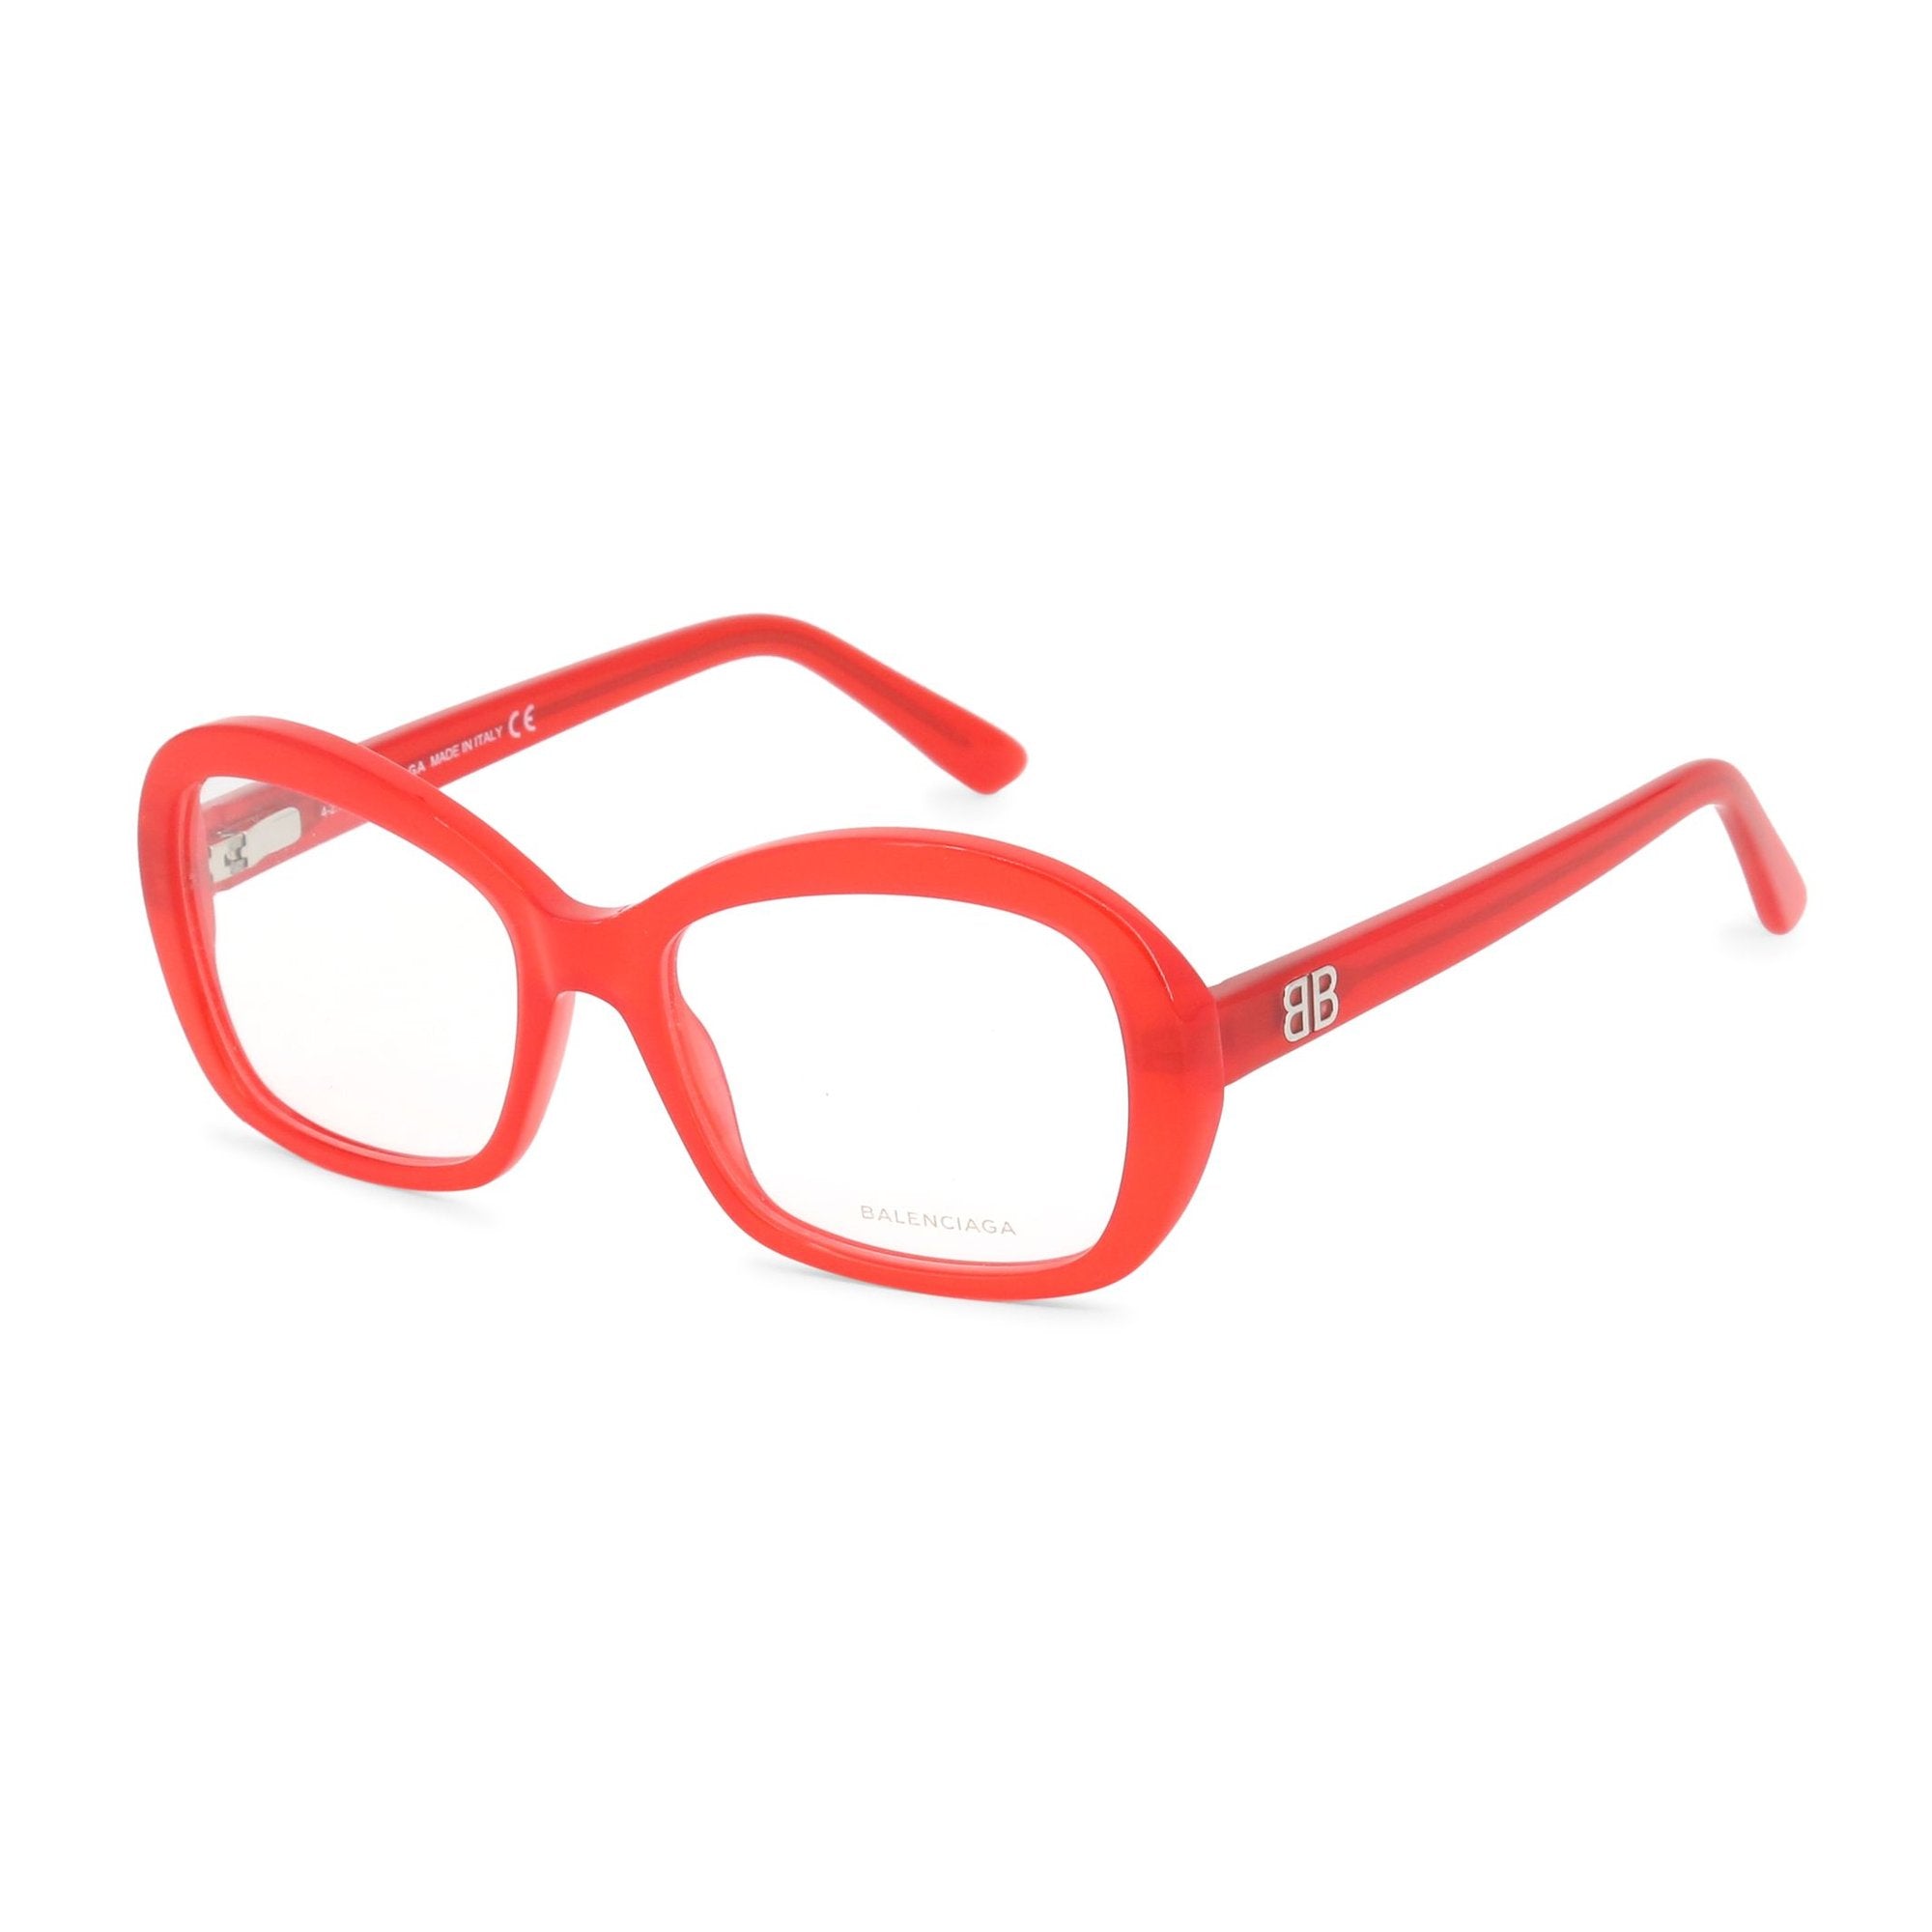 Balenciaga Damen Brille Brillenfassung Markenbrille